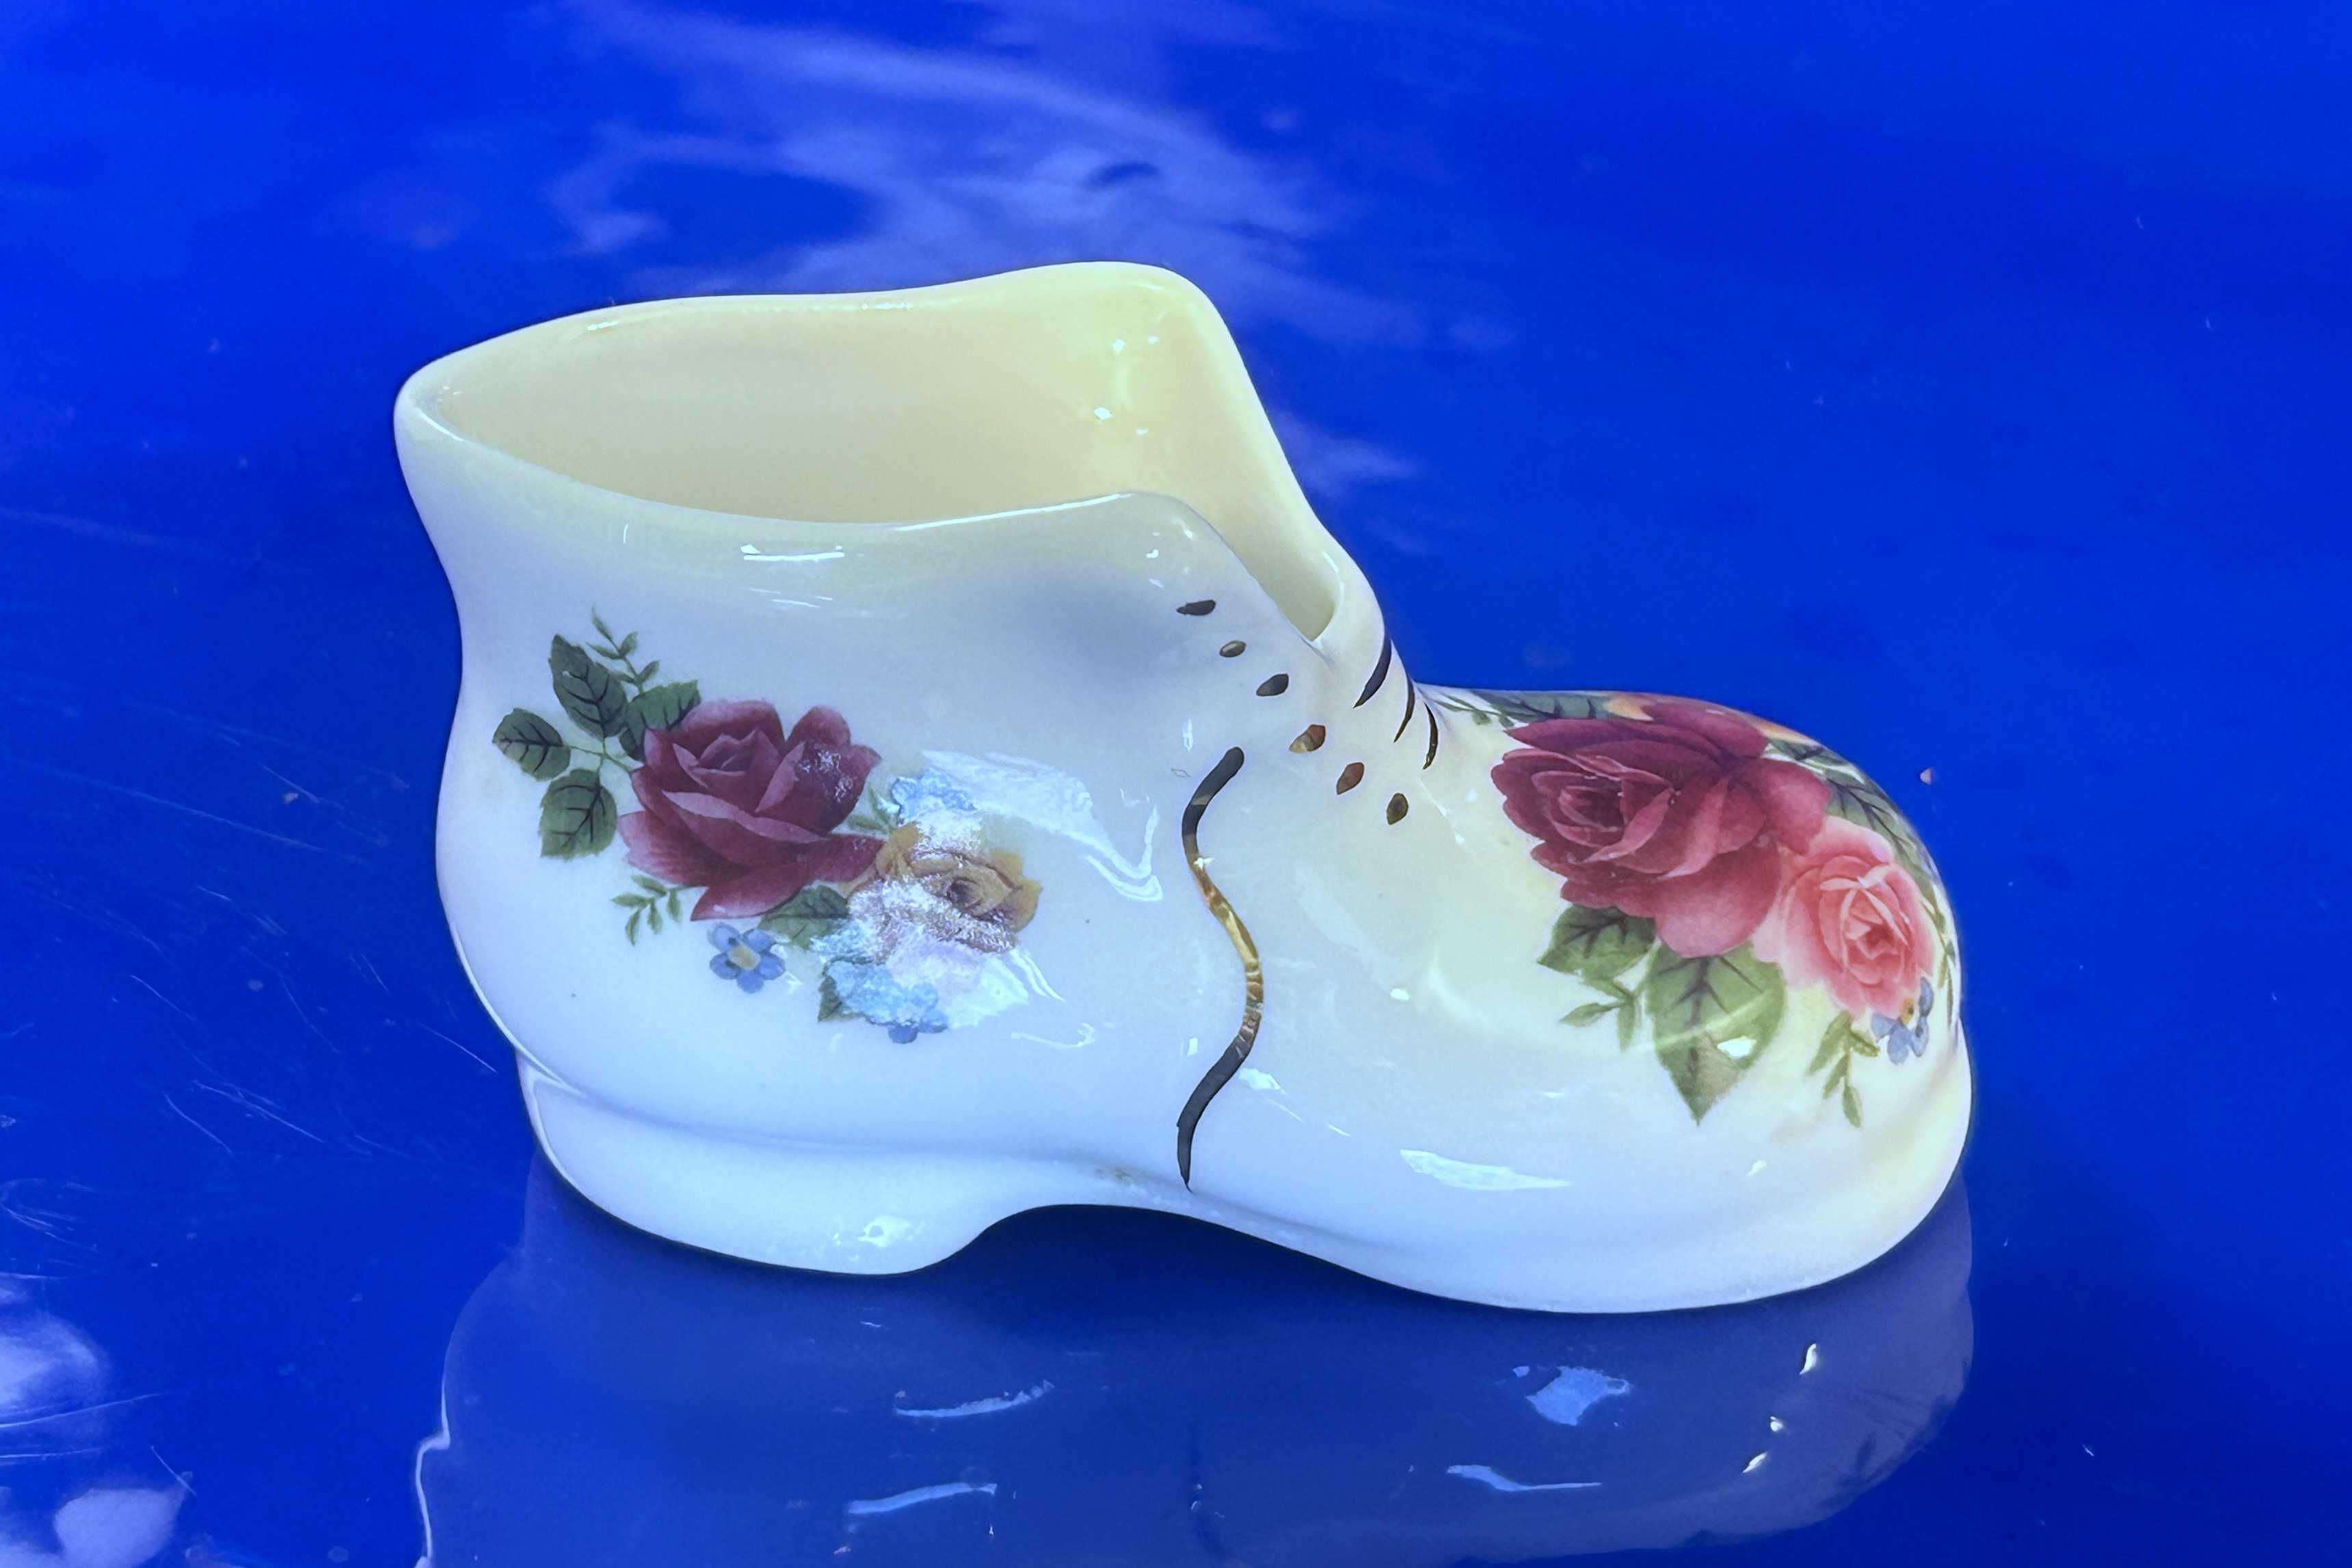 Bucik z wzorem kwiatowym. Porcelana kostna, marki Peter Gosling